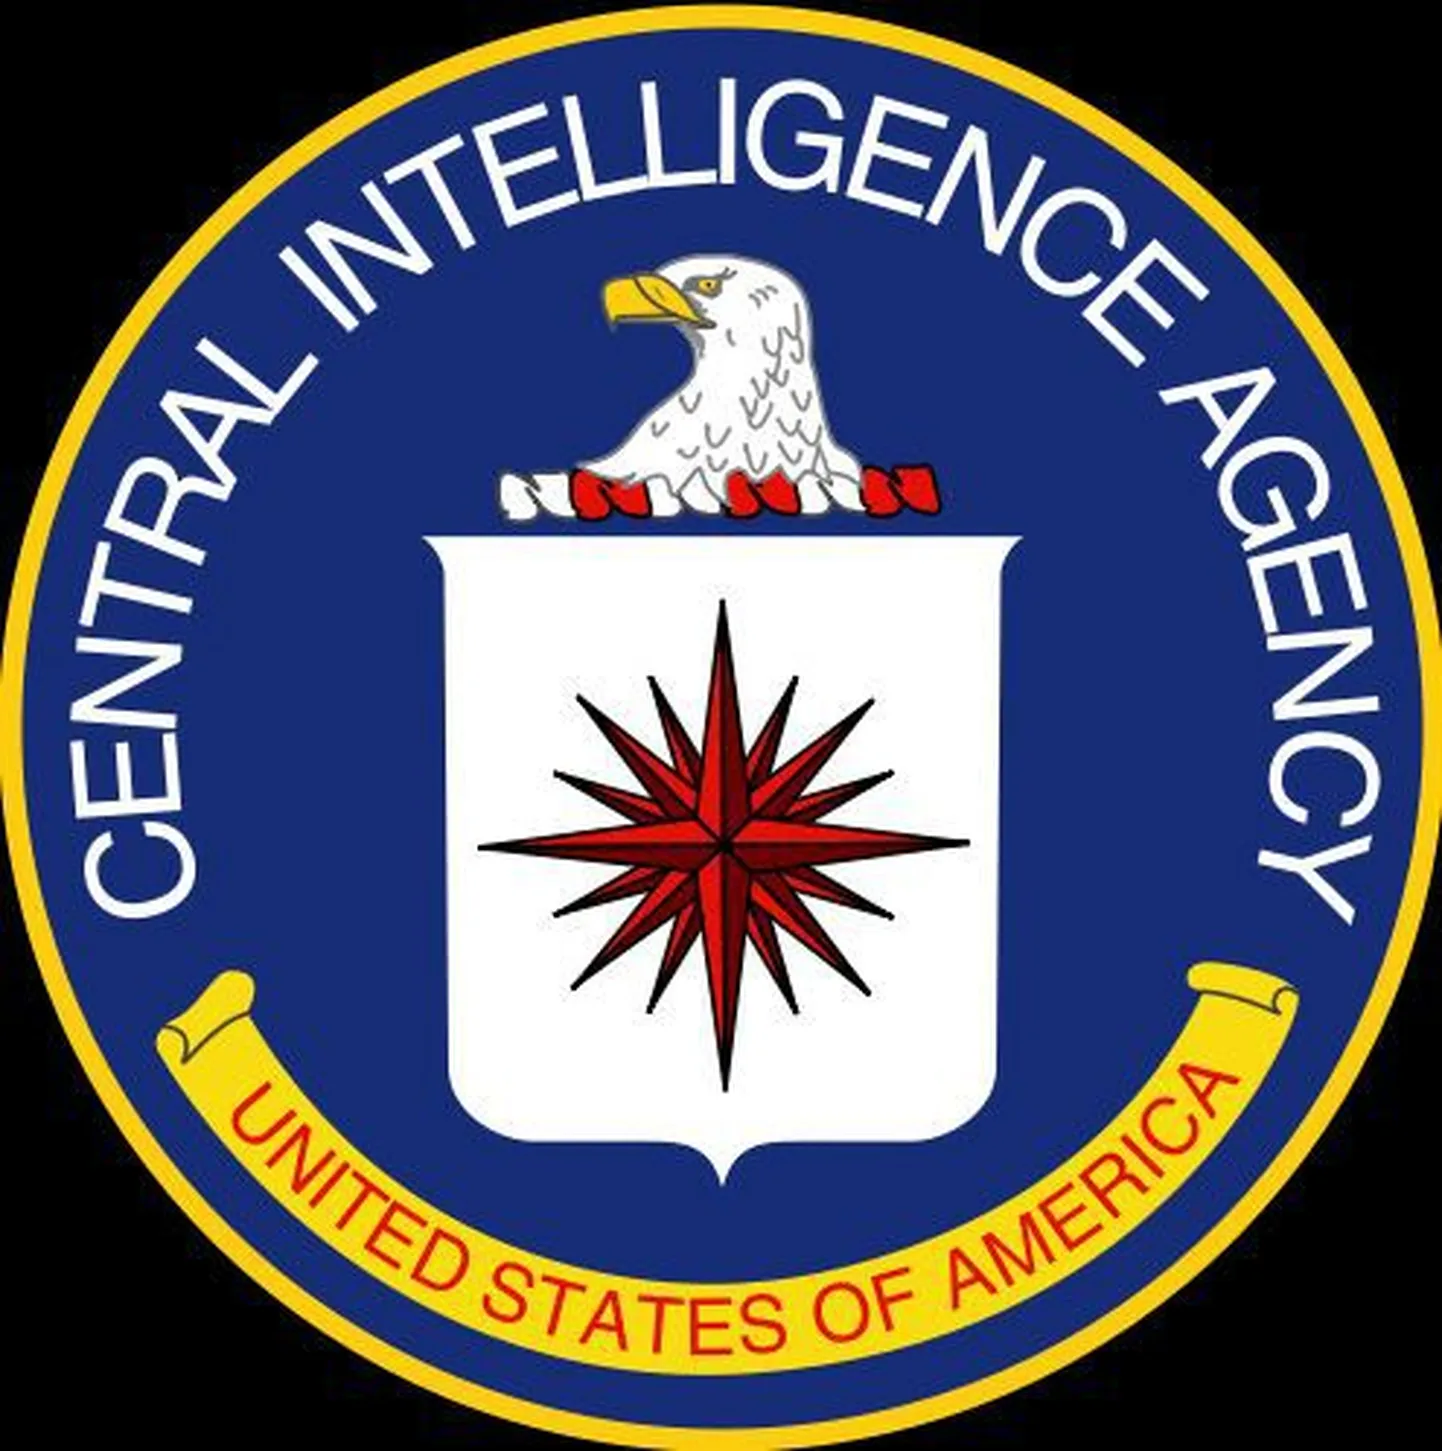 Эмблема ЦРУ